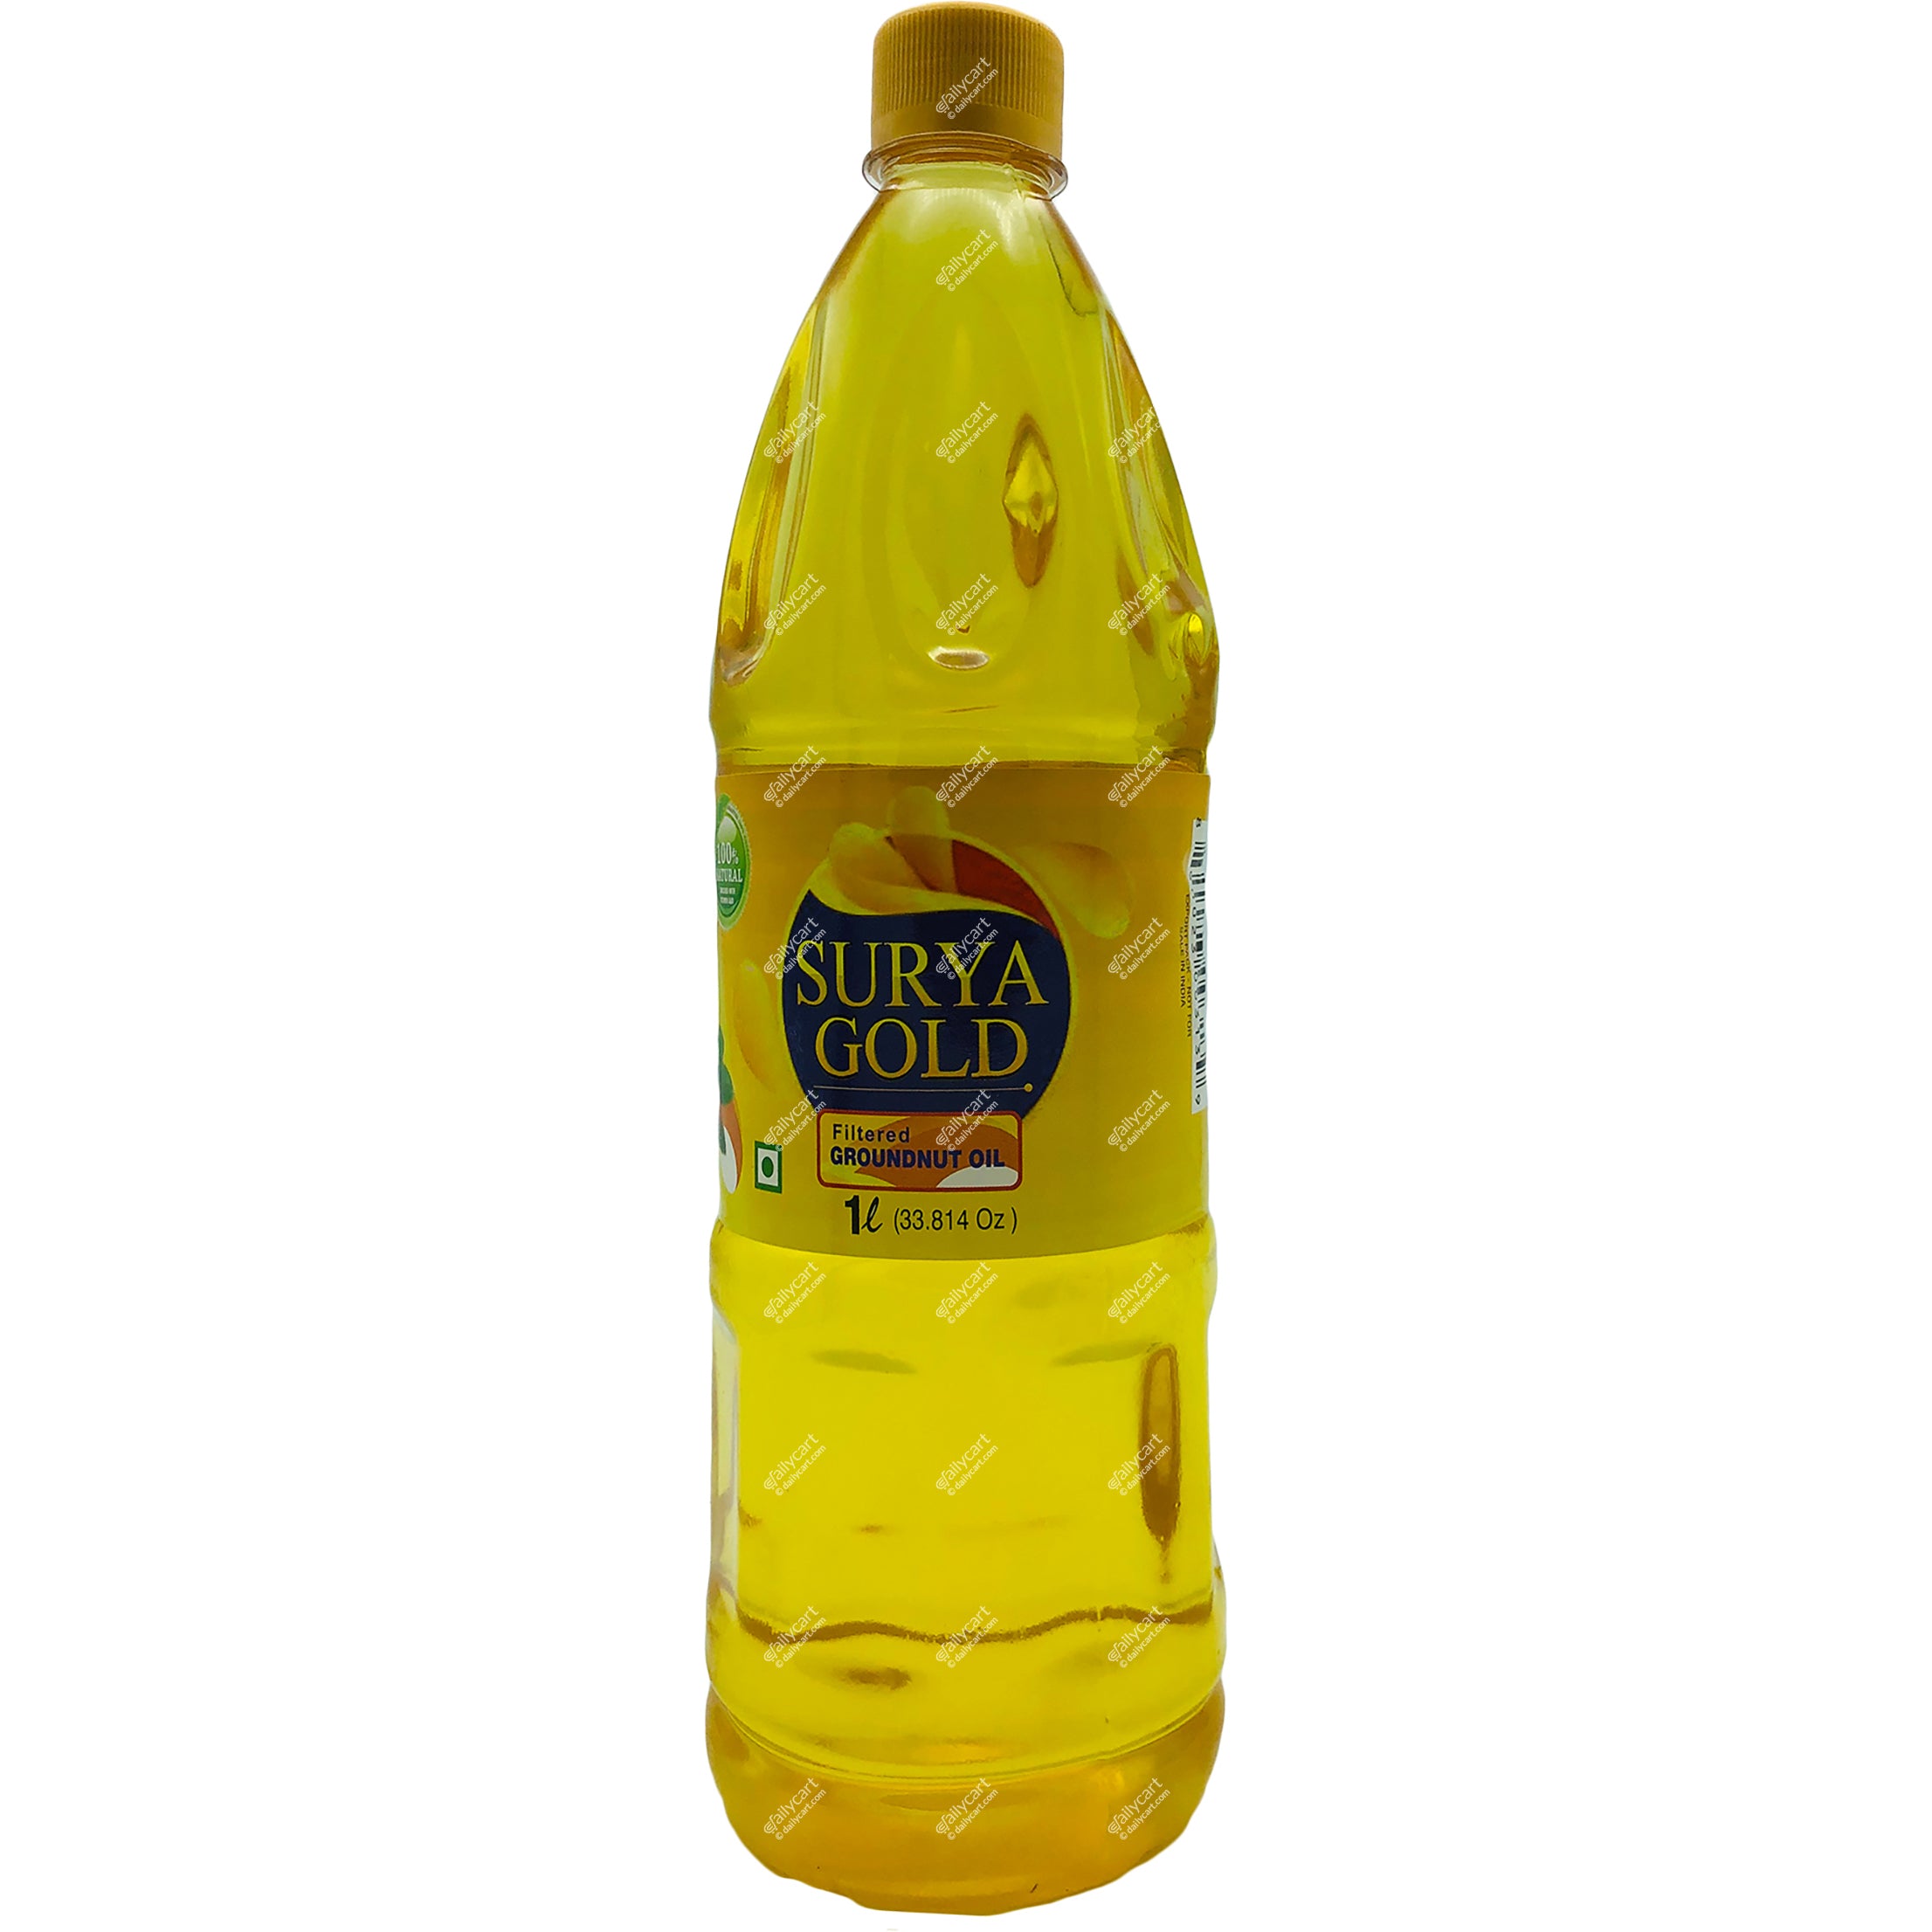 Surya Gold Ground Nut Oil, 1 litre